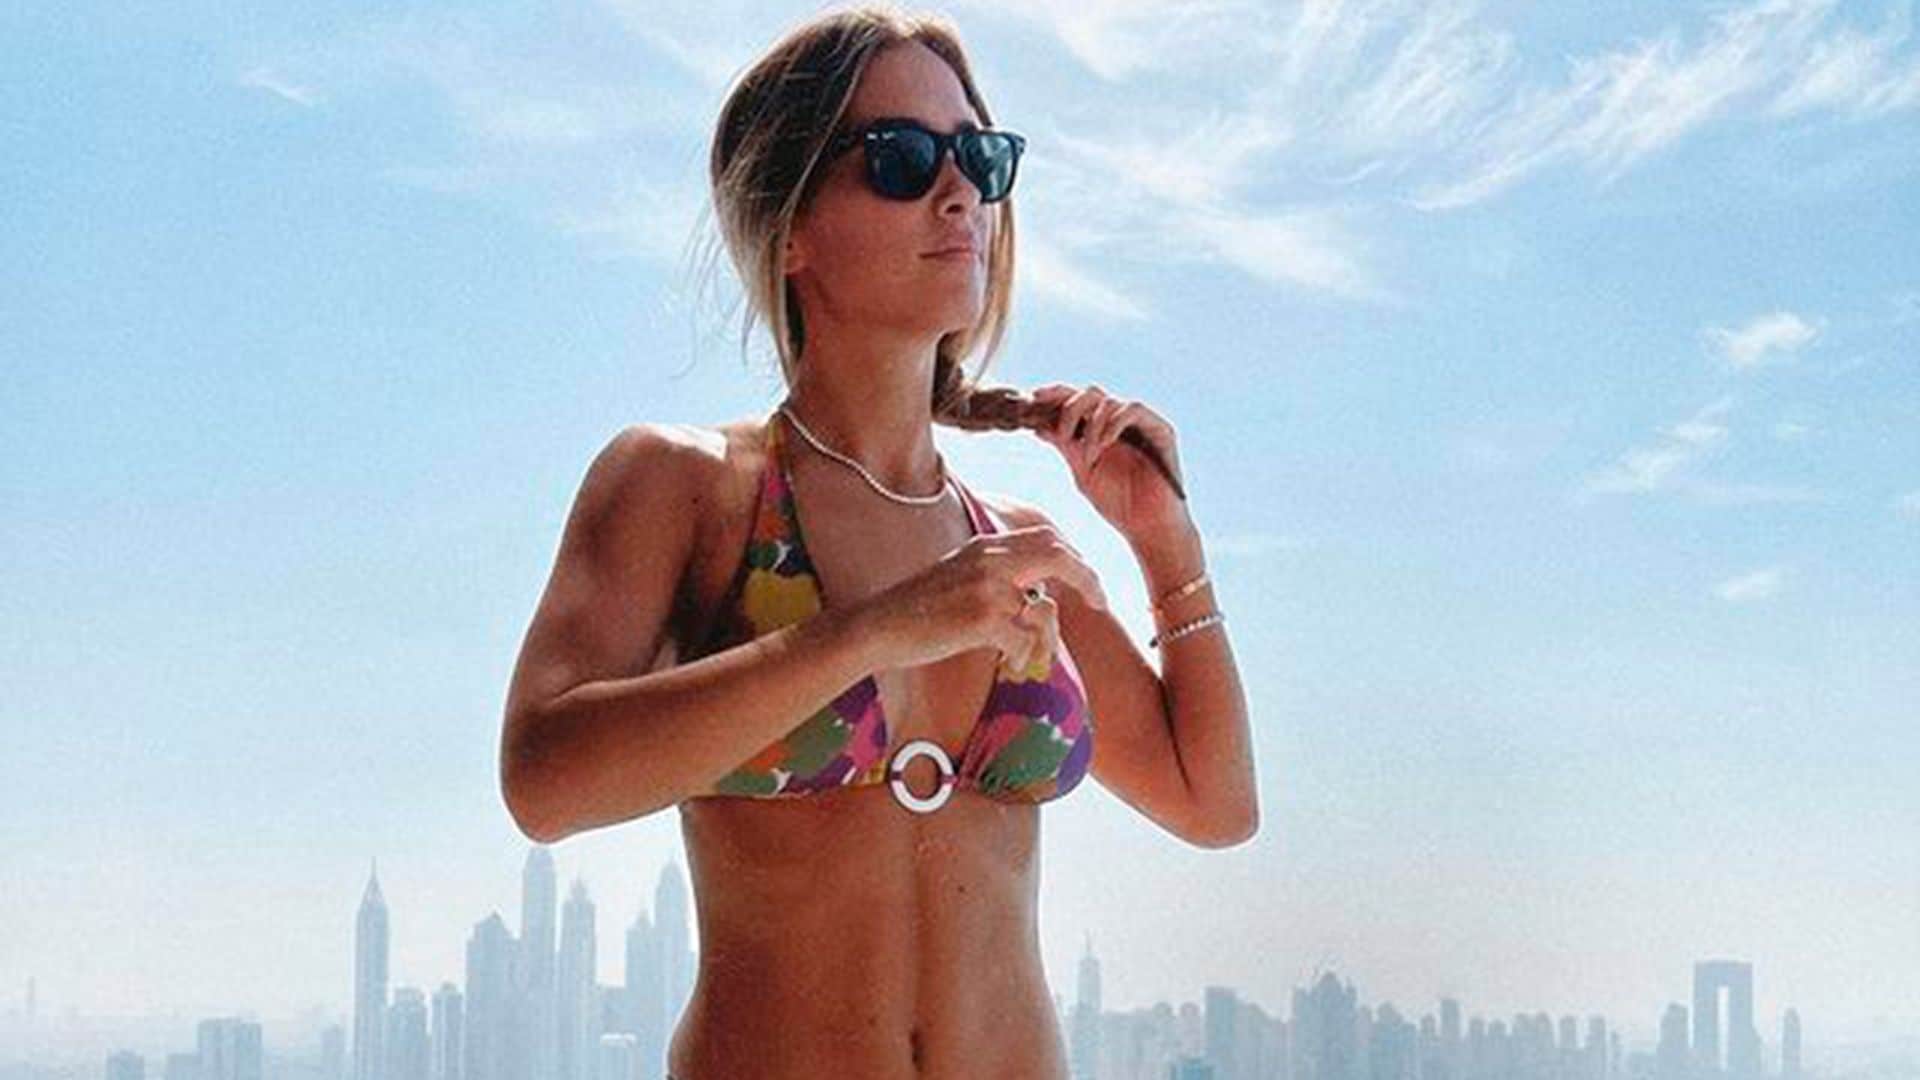 Las espectaculares imágenes de María Pombo luciendo tipazo en bikini entre los rascacielos de Dubai